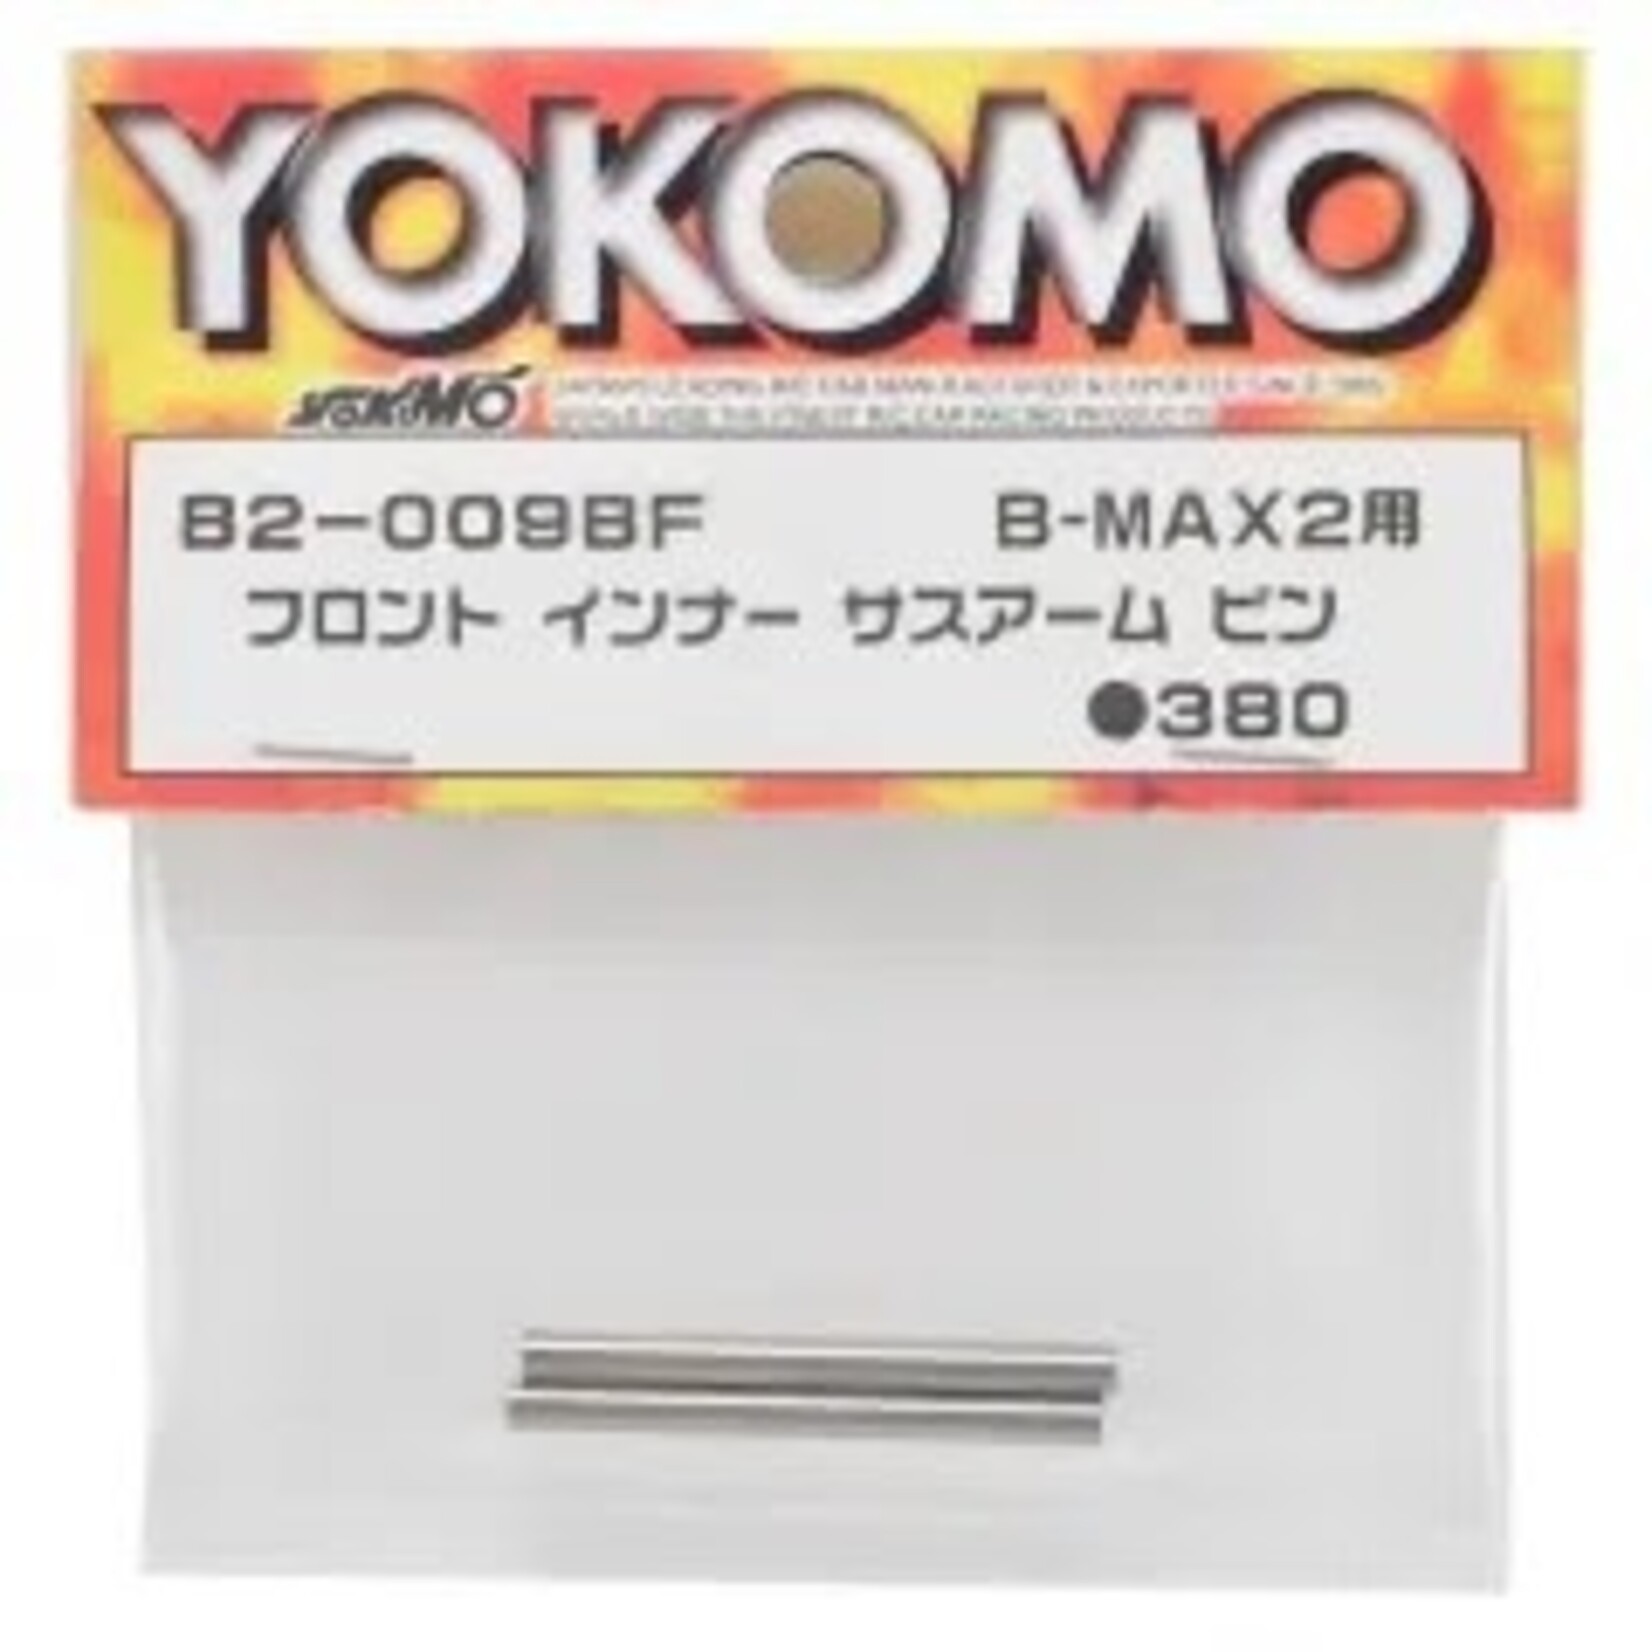 Yokomo YOKB2-009BF Yokomo Front Inner Suspension Arm Pins for B-MAX2